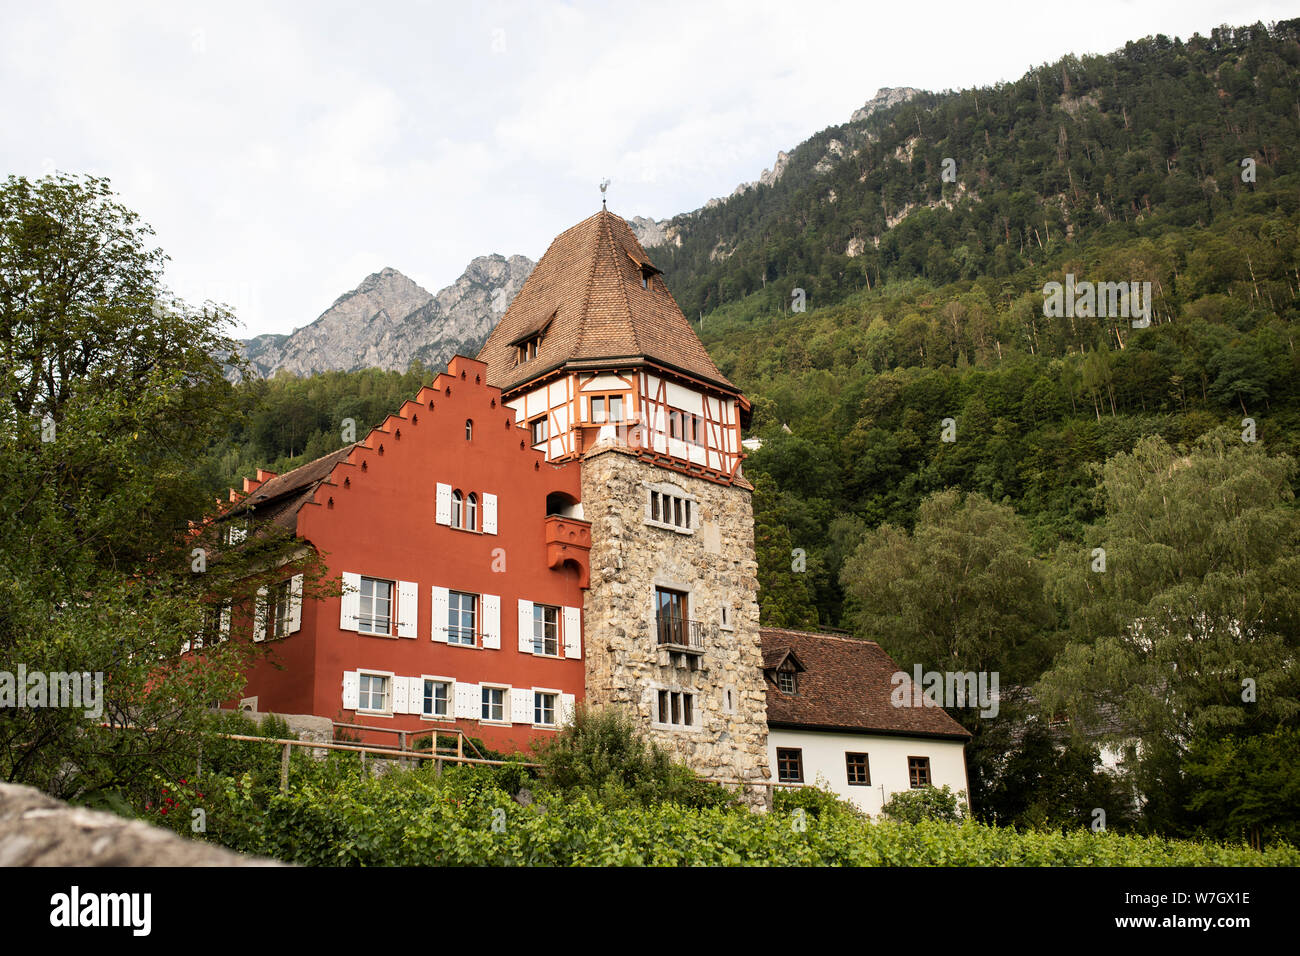 La Casa Rossa in Vaduz, Liechtenstein, è una famosa casa privata costruita nel 1338 e circondato dal principe della royal vigneti. Foto Stock